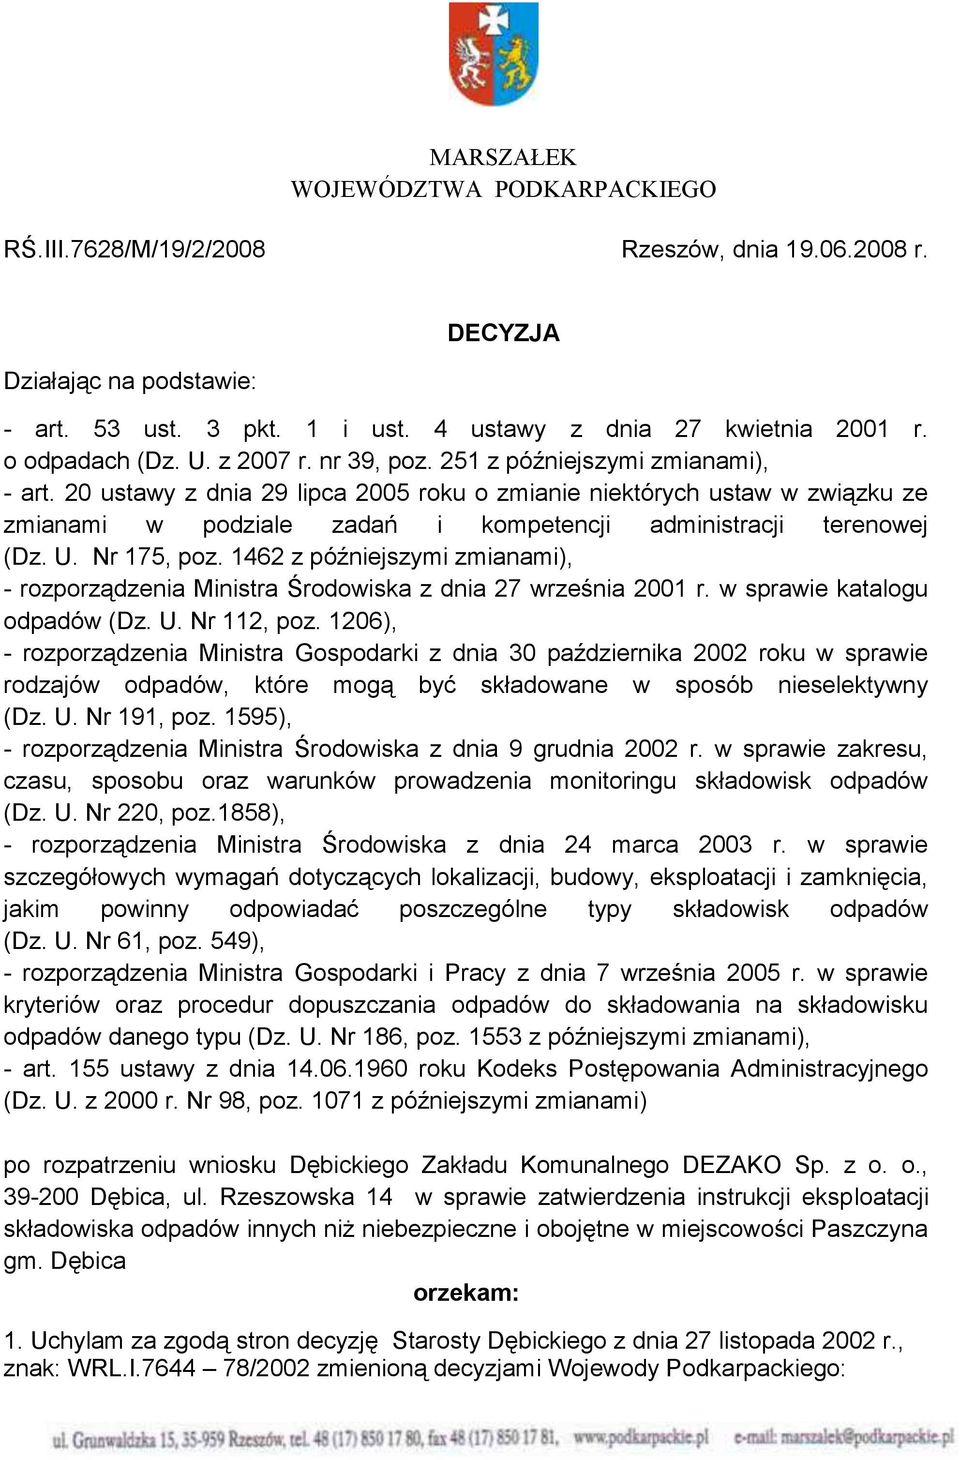 20 ustawy z dnia 29 lipca 2005 roku o zmianie niektórych ustaw w związku ze zmianami w podziale zadań i kompetencji administracji terenowej (Dz. U. Nr 175, poz.